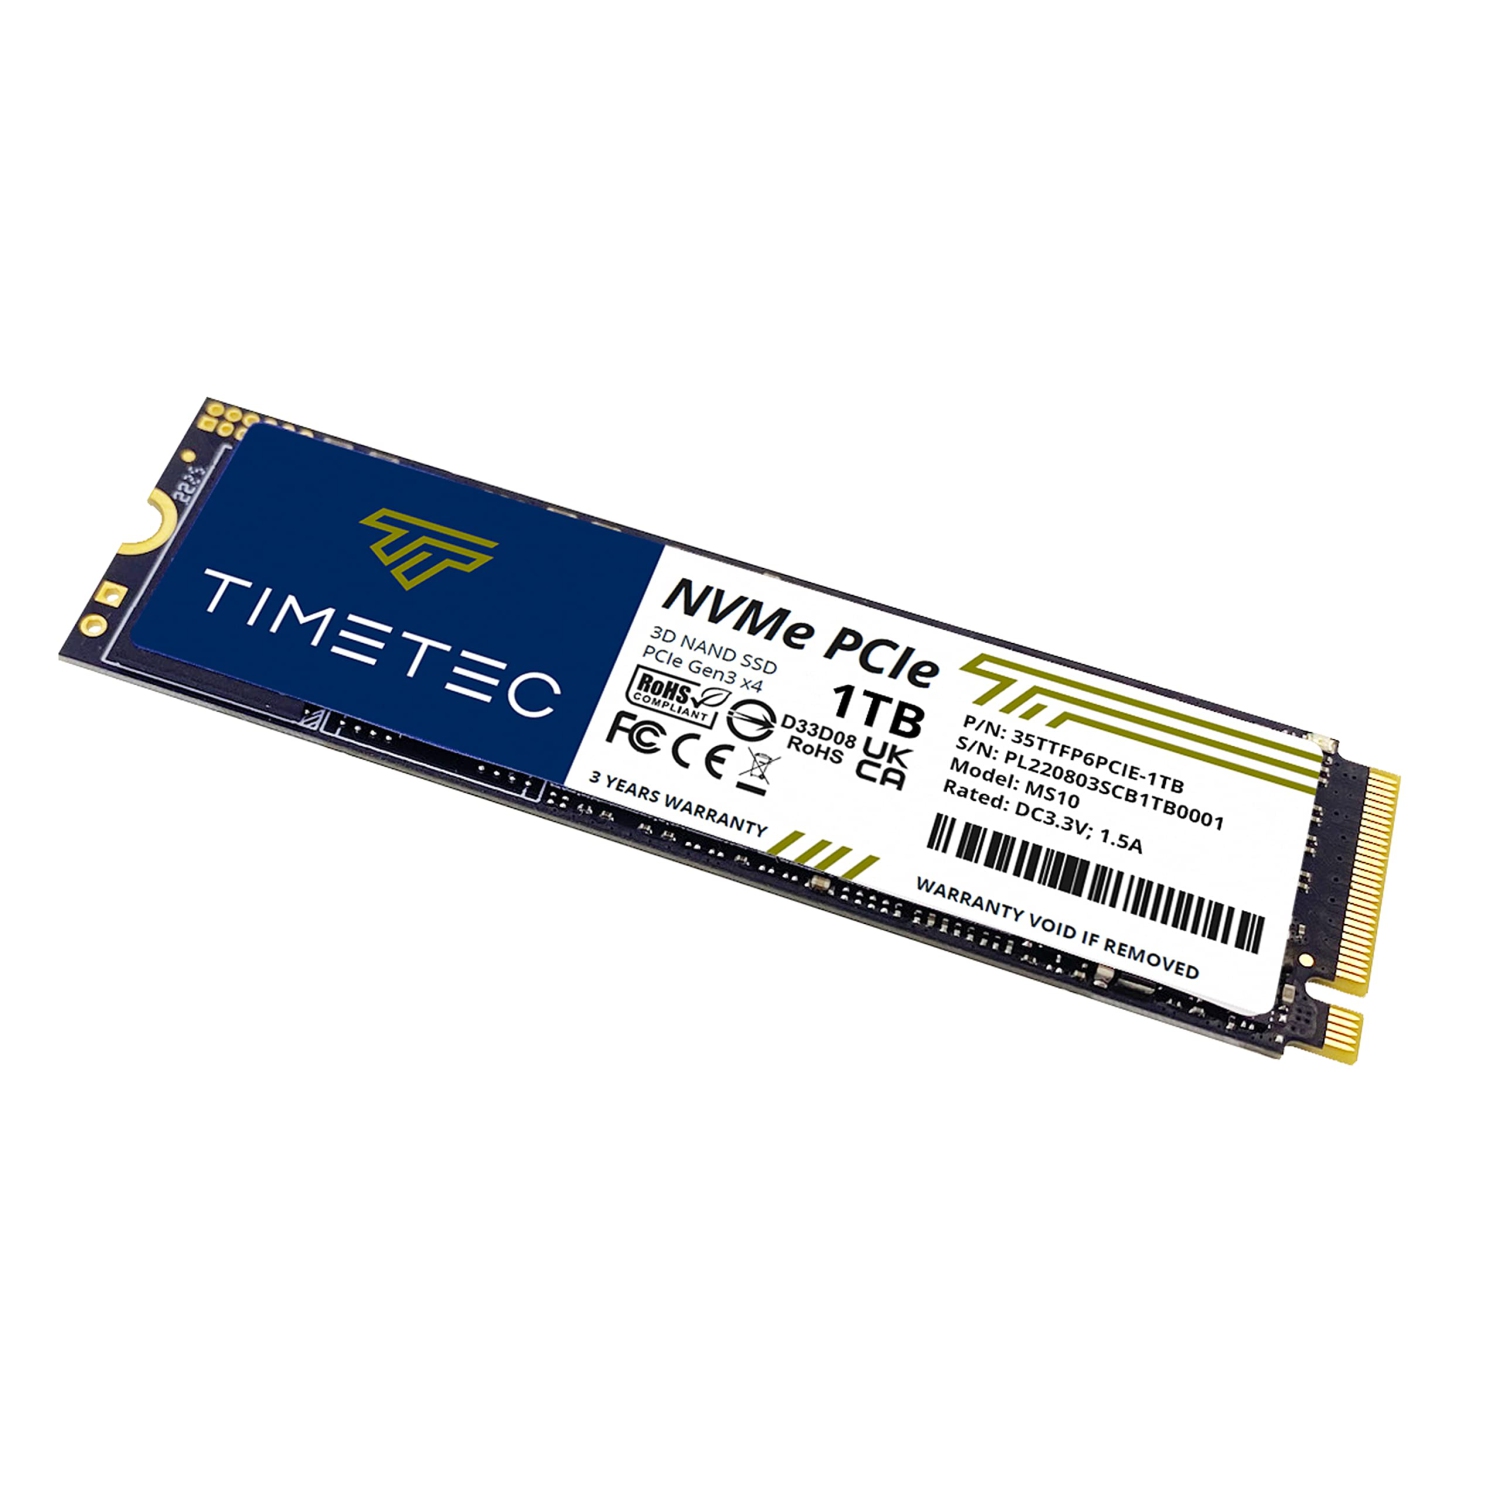 Timetec 1TB SSD NVMe PCIe Gen3x4 8Gb/s M.2 2280 3D NAND TLC 600TBW